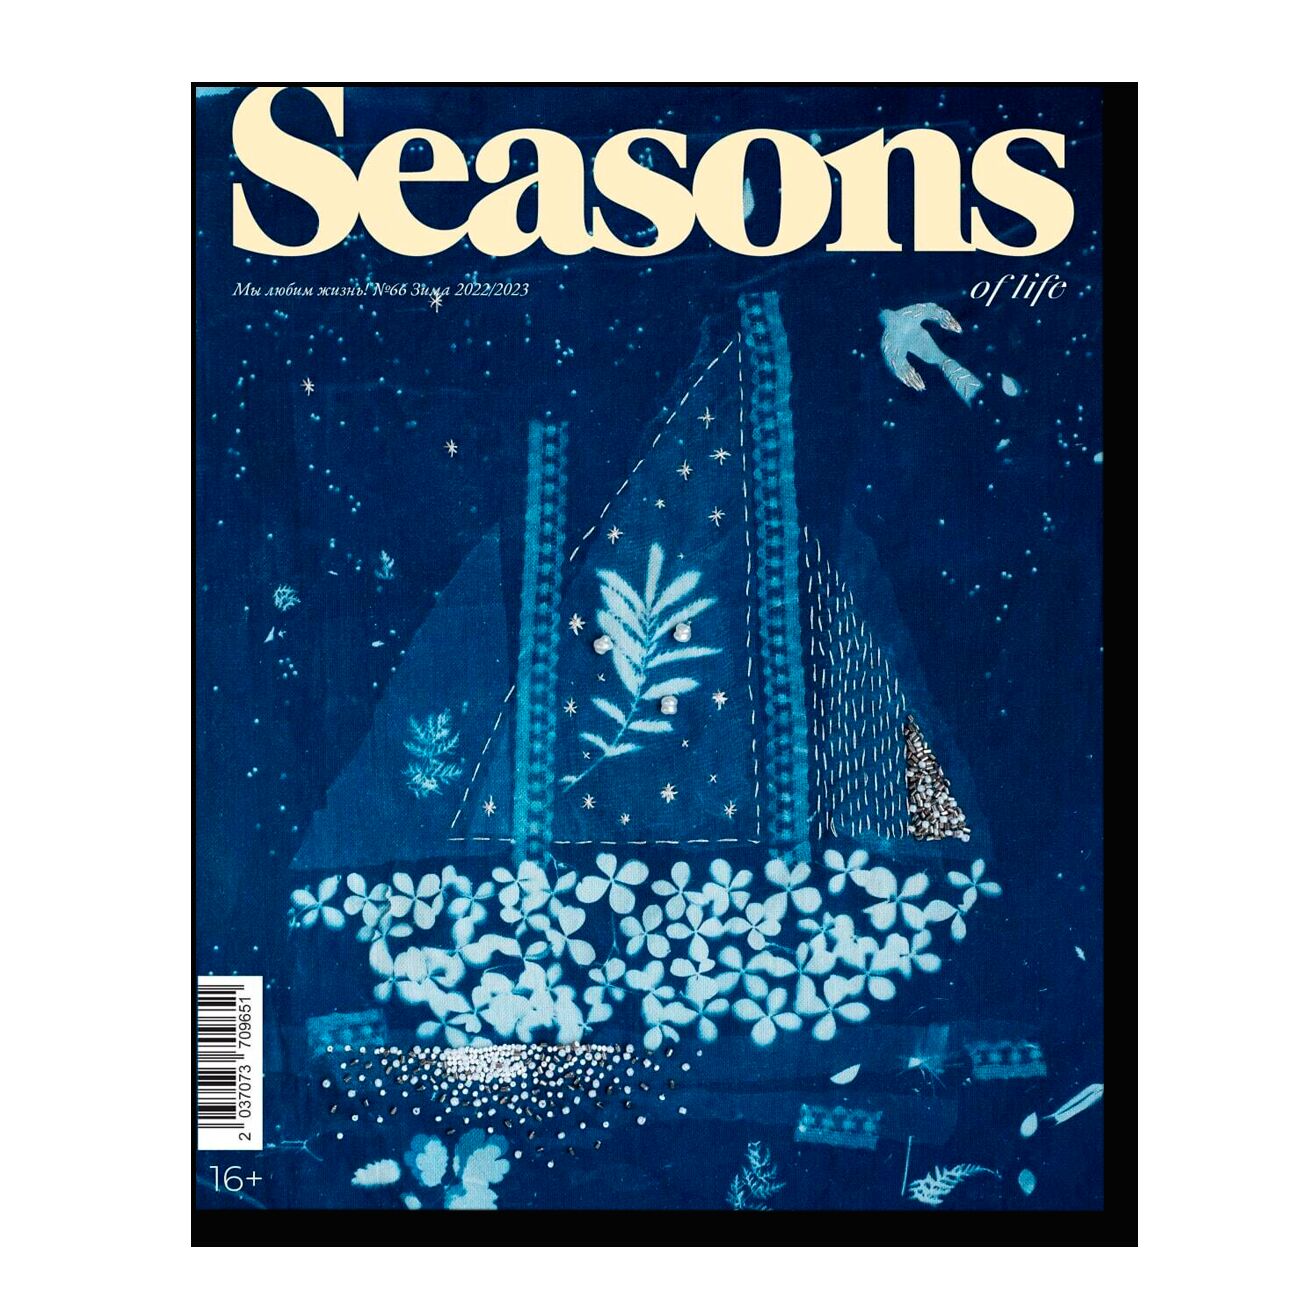 Журнал Seasons of life №62 (зима 2021/2022)